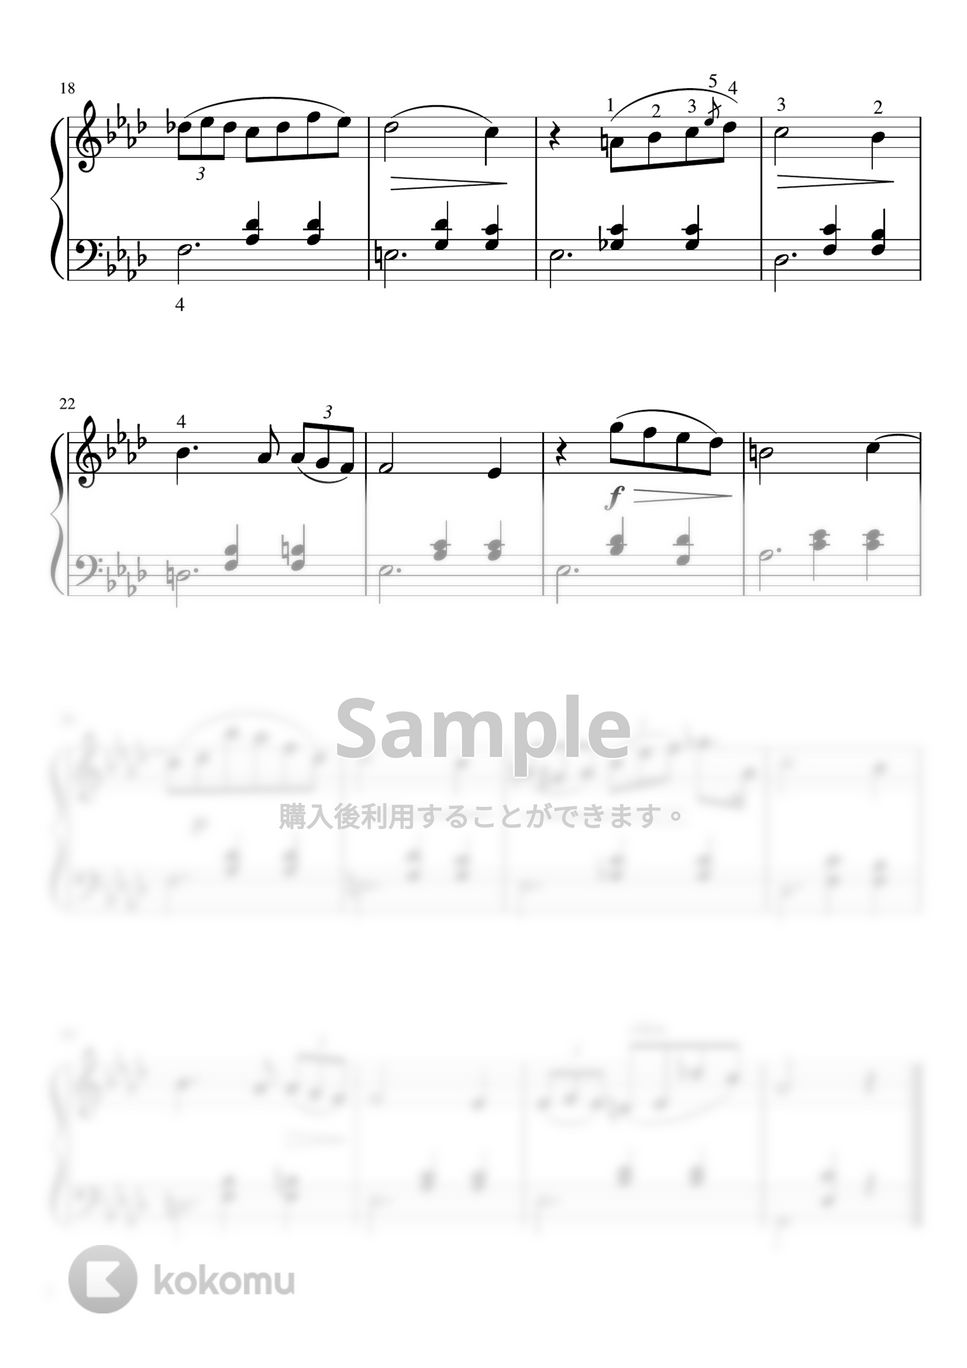 ショパン - 告別のワルツ (Fm・ピアノソロ初〜中級) by pfkaori